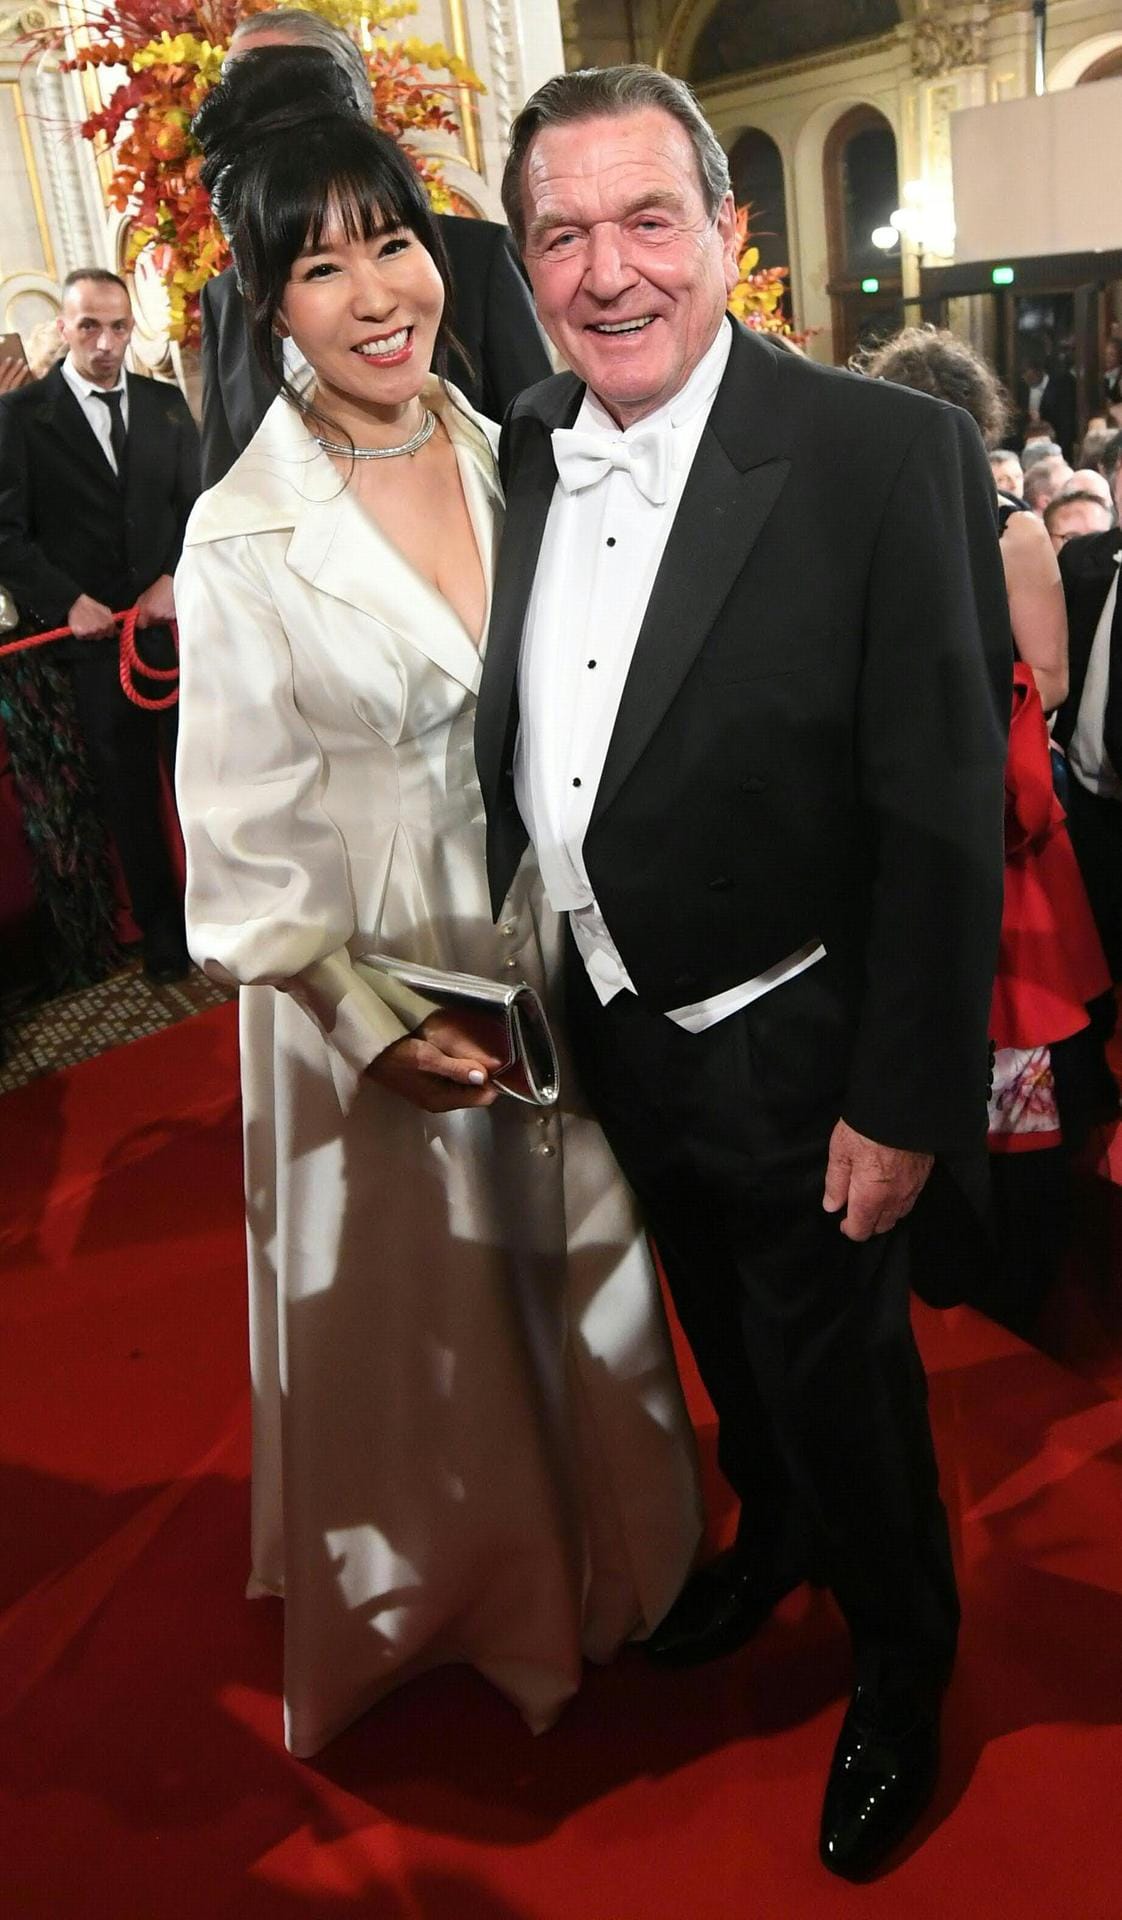 Ex-Kanzler Gerhard Schröder mit Ehefrau Soyeon Kim